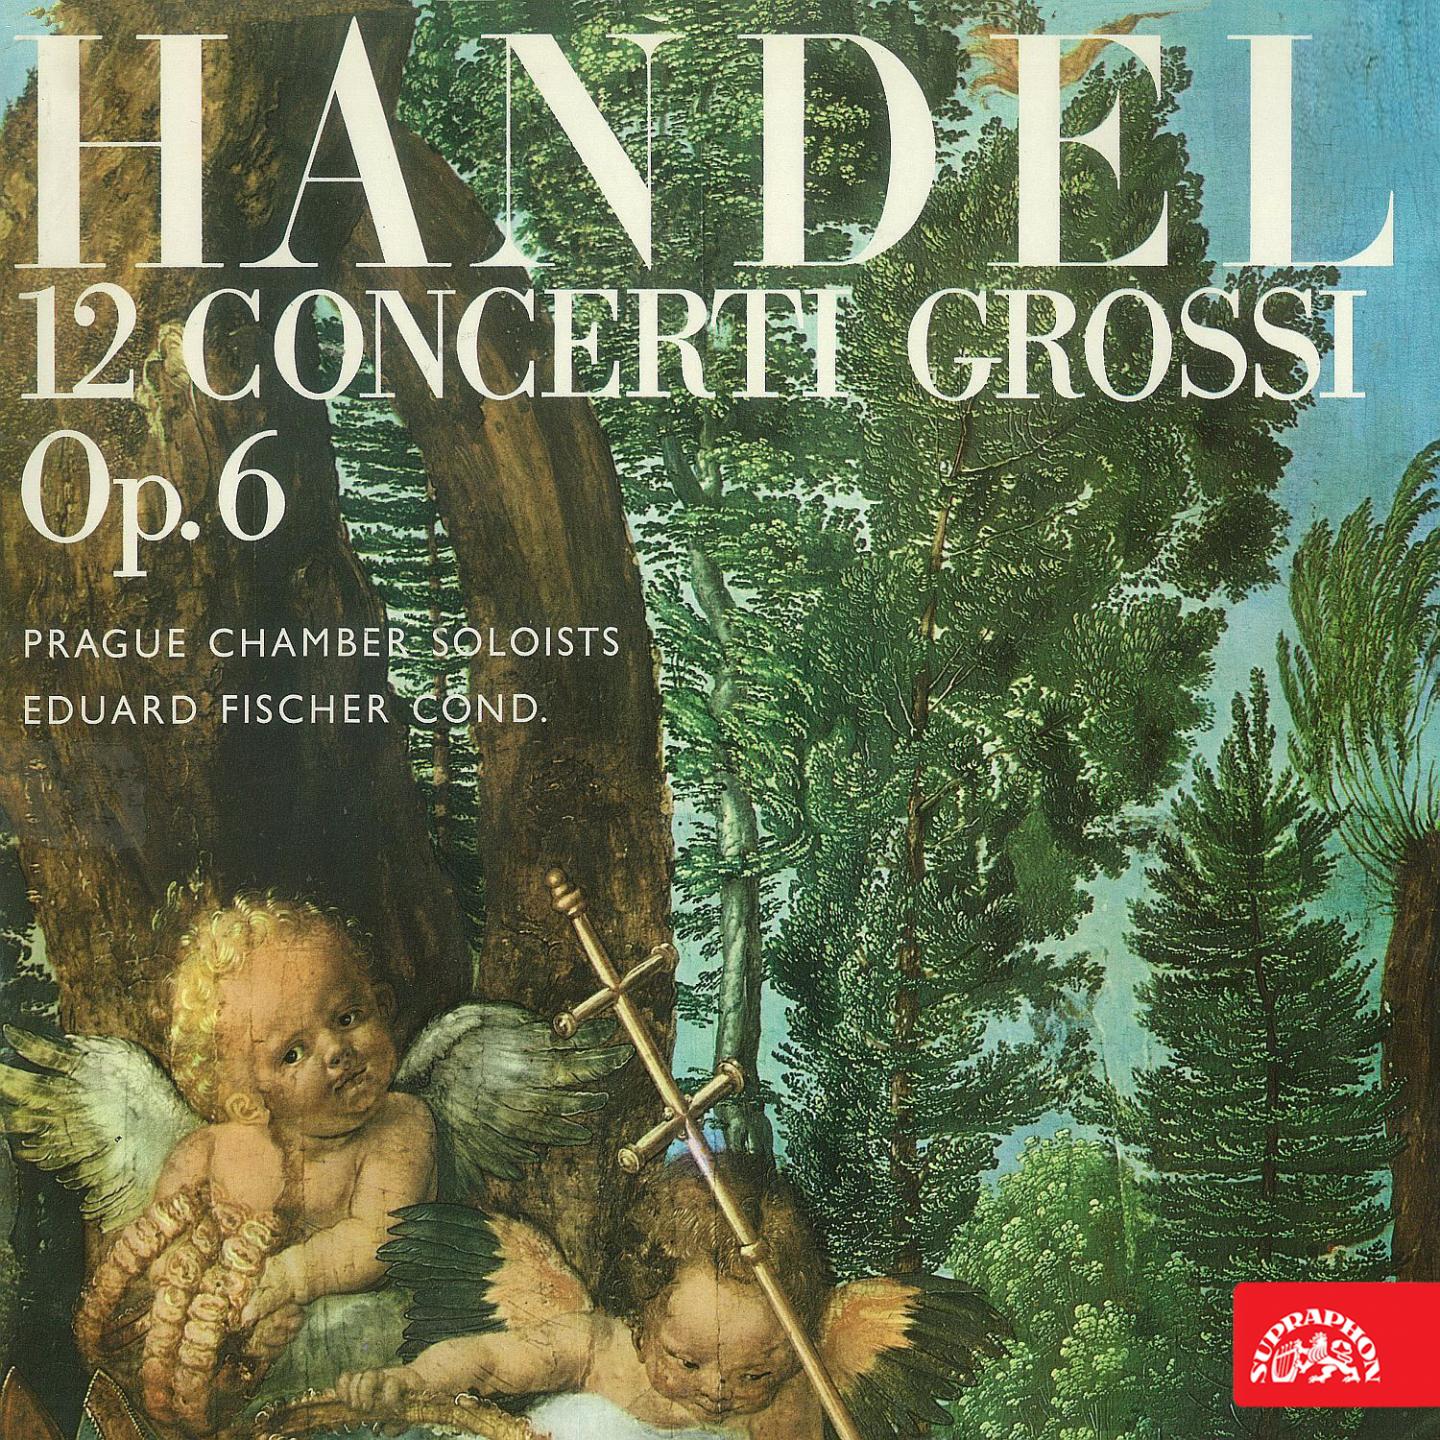 12 Concerti grossi, Op. 6, No. 5 in D Major, HWV 323: I. Allegro